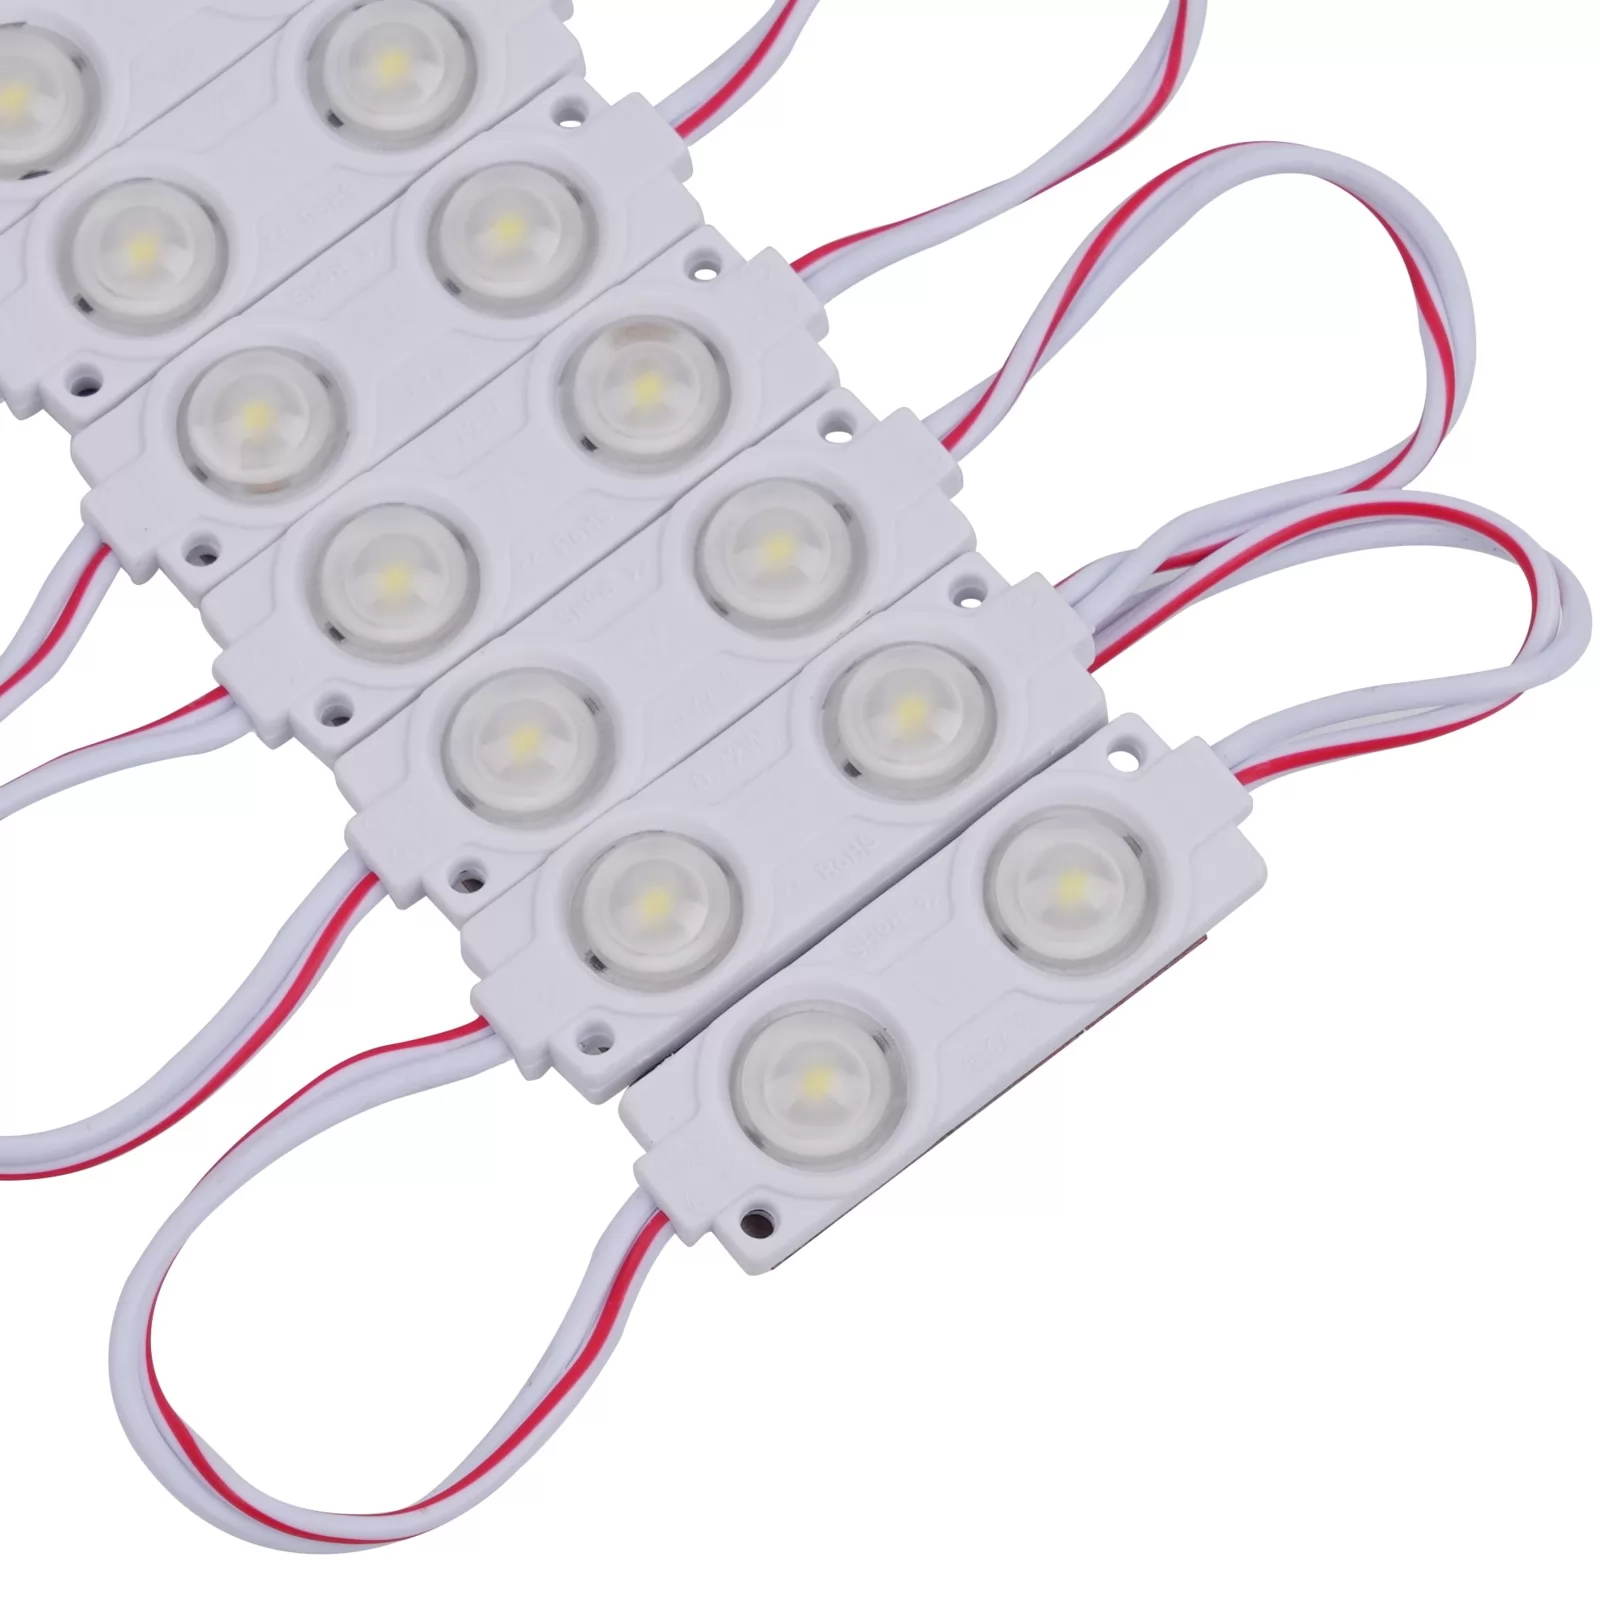 LED Modules Light 12V DC 0.72W 6500K White for Advertising Light Box Letter  Sign (200pcs Pack)